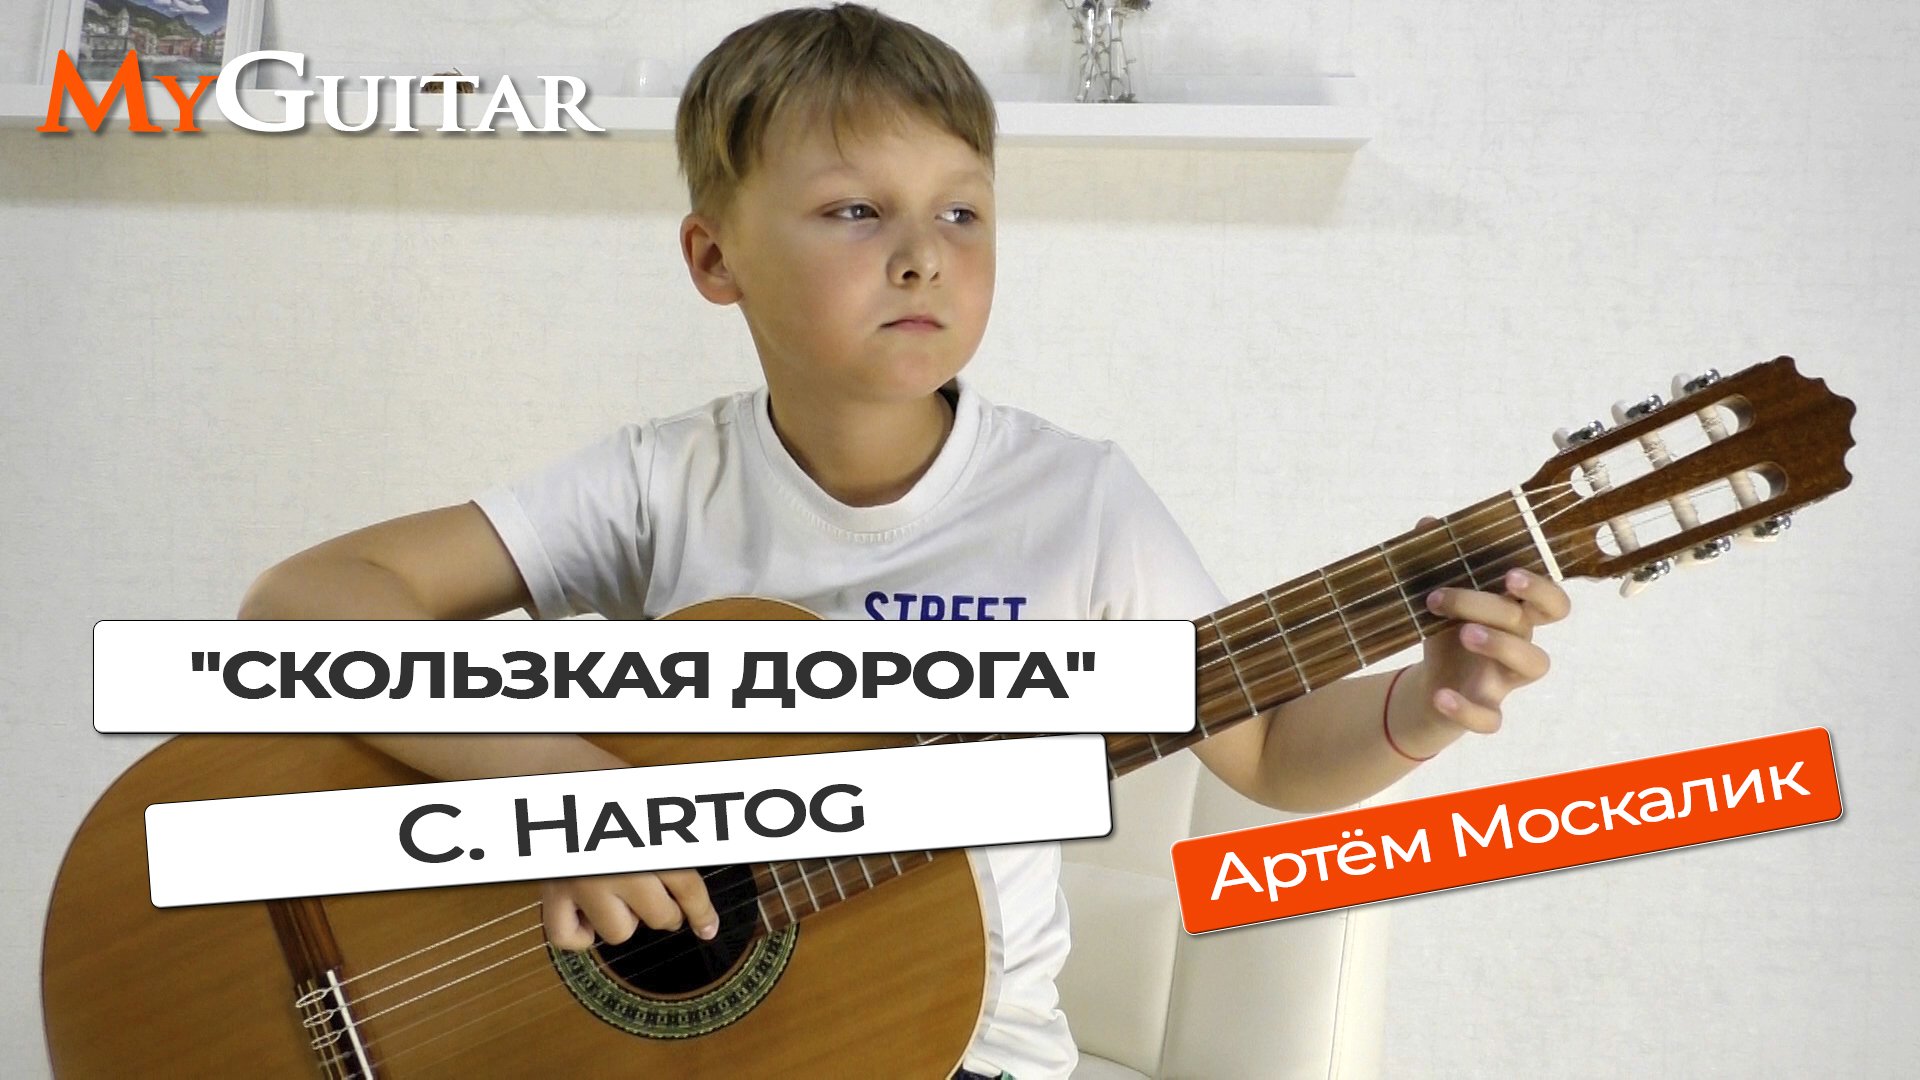 "Скользкая дорога", C. Hartog. Исполняет Артём Москалик (8 лет). Ноты + Табы.